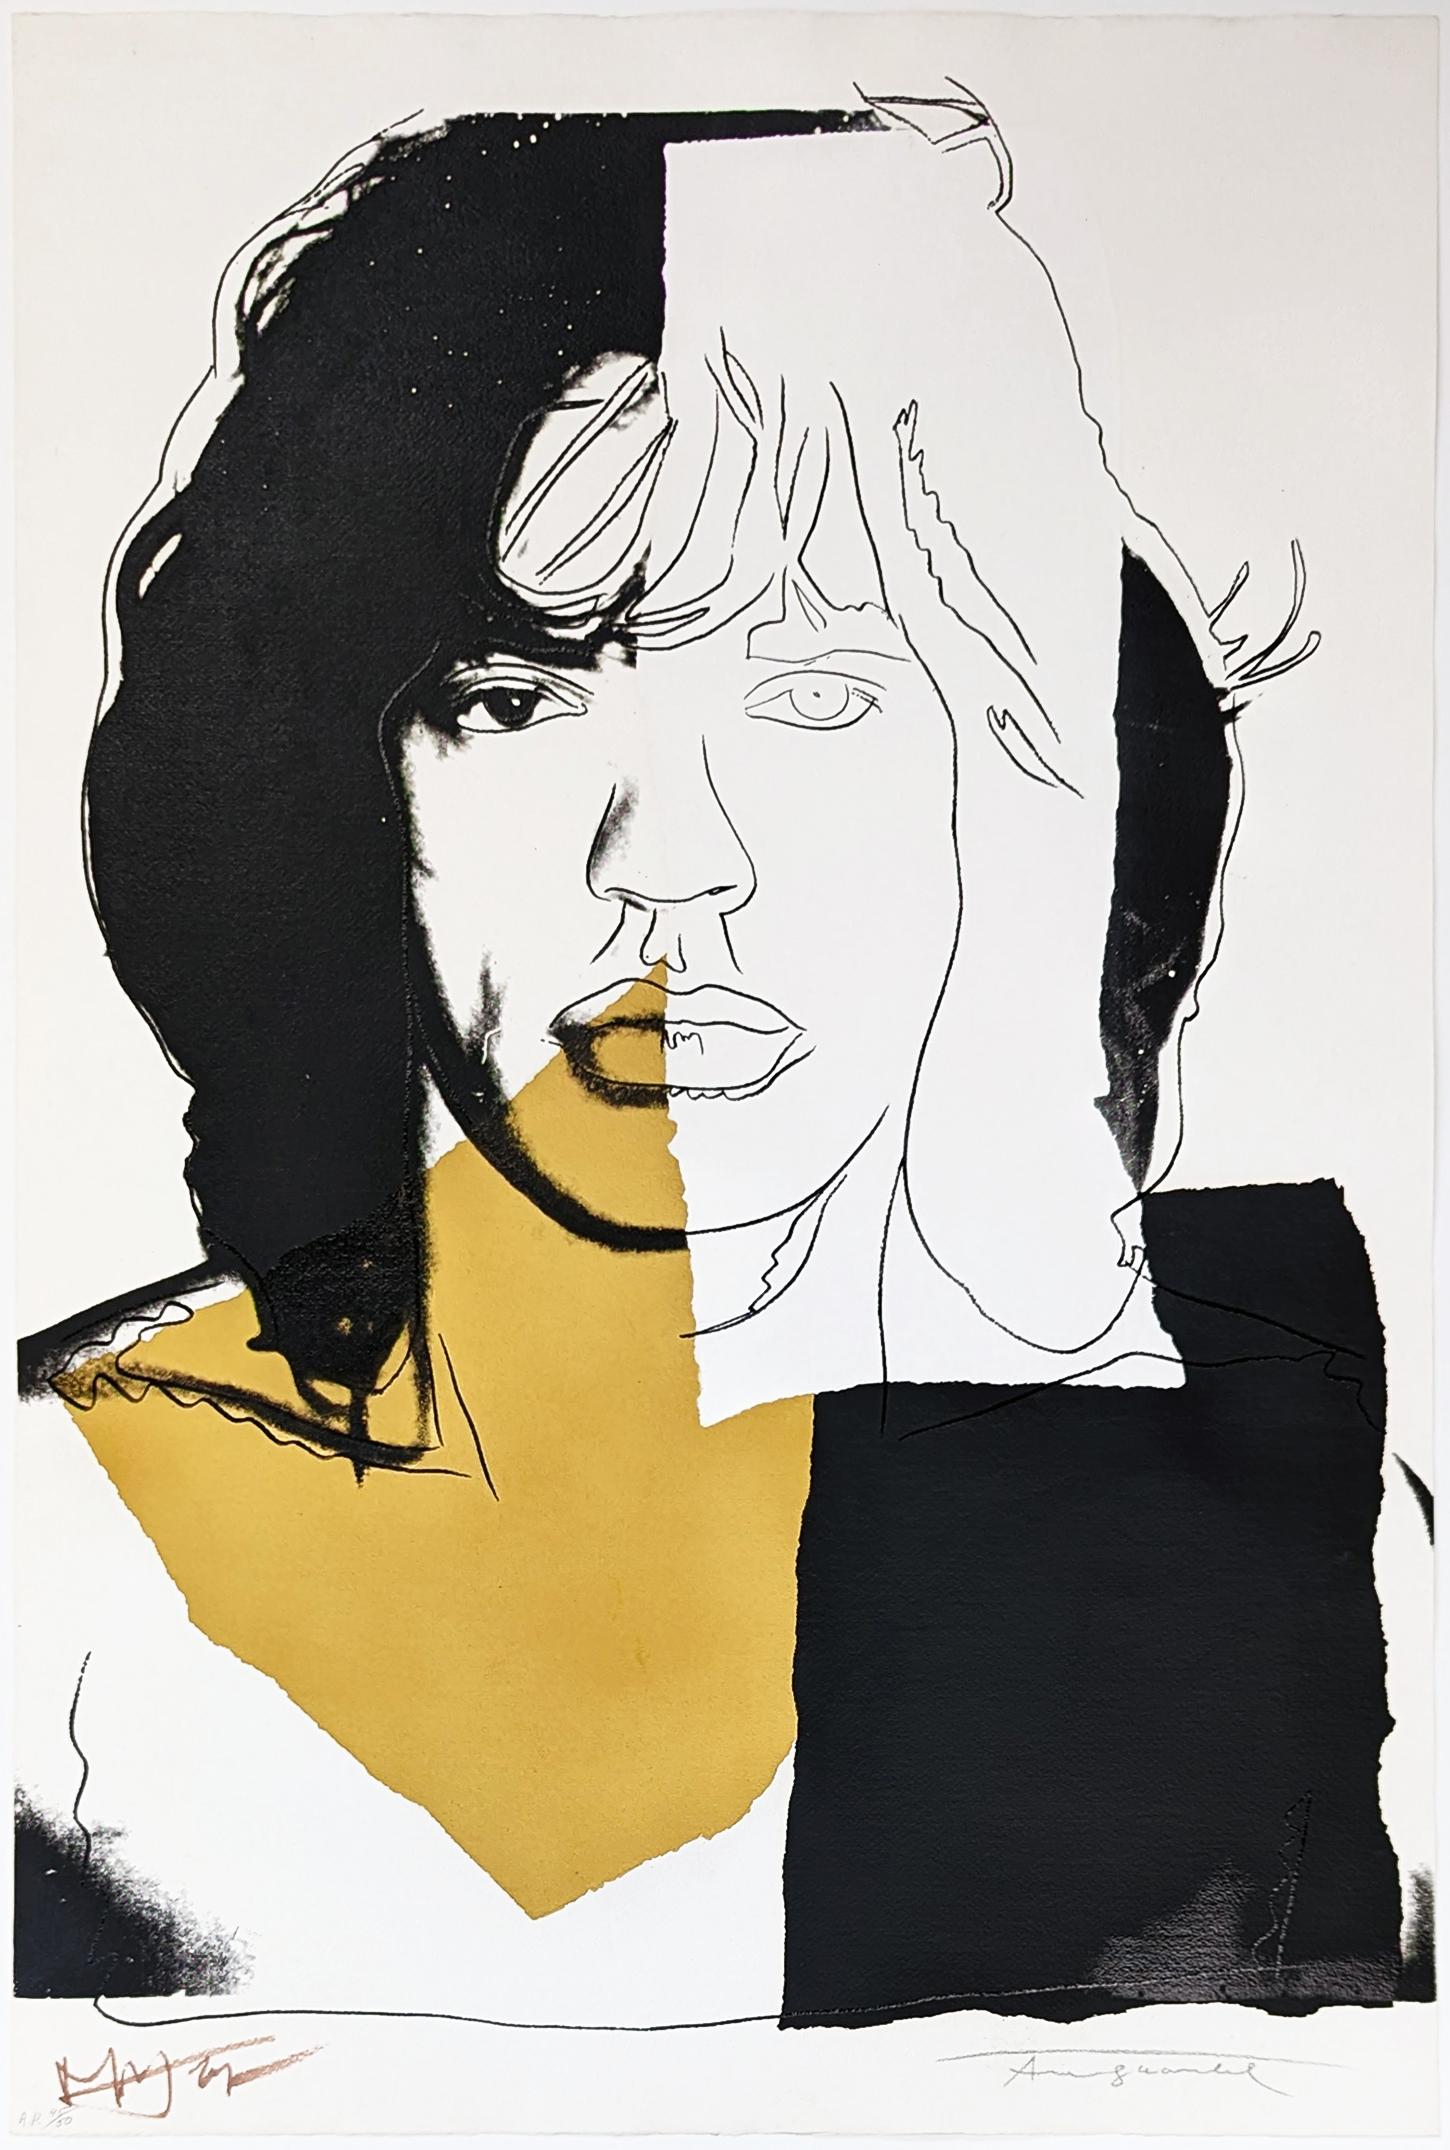 Andy Warhol Portrait Print - MICK JAGGER FS II.146